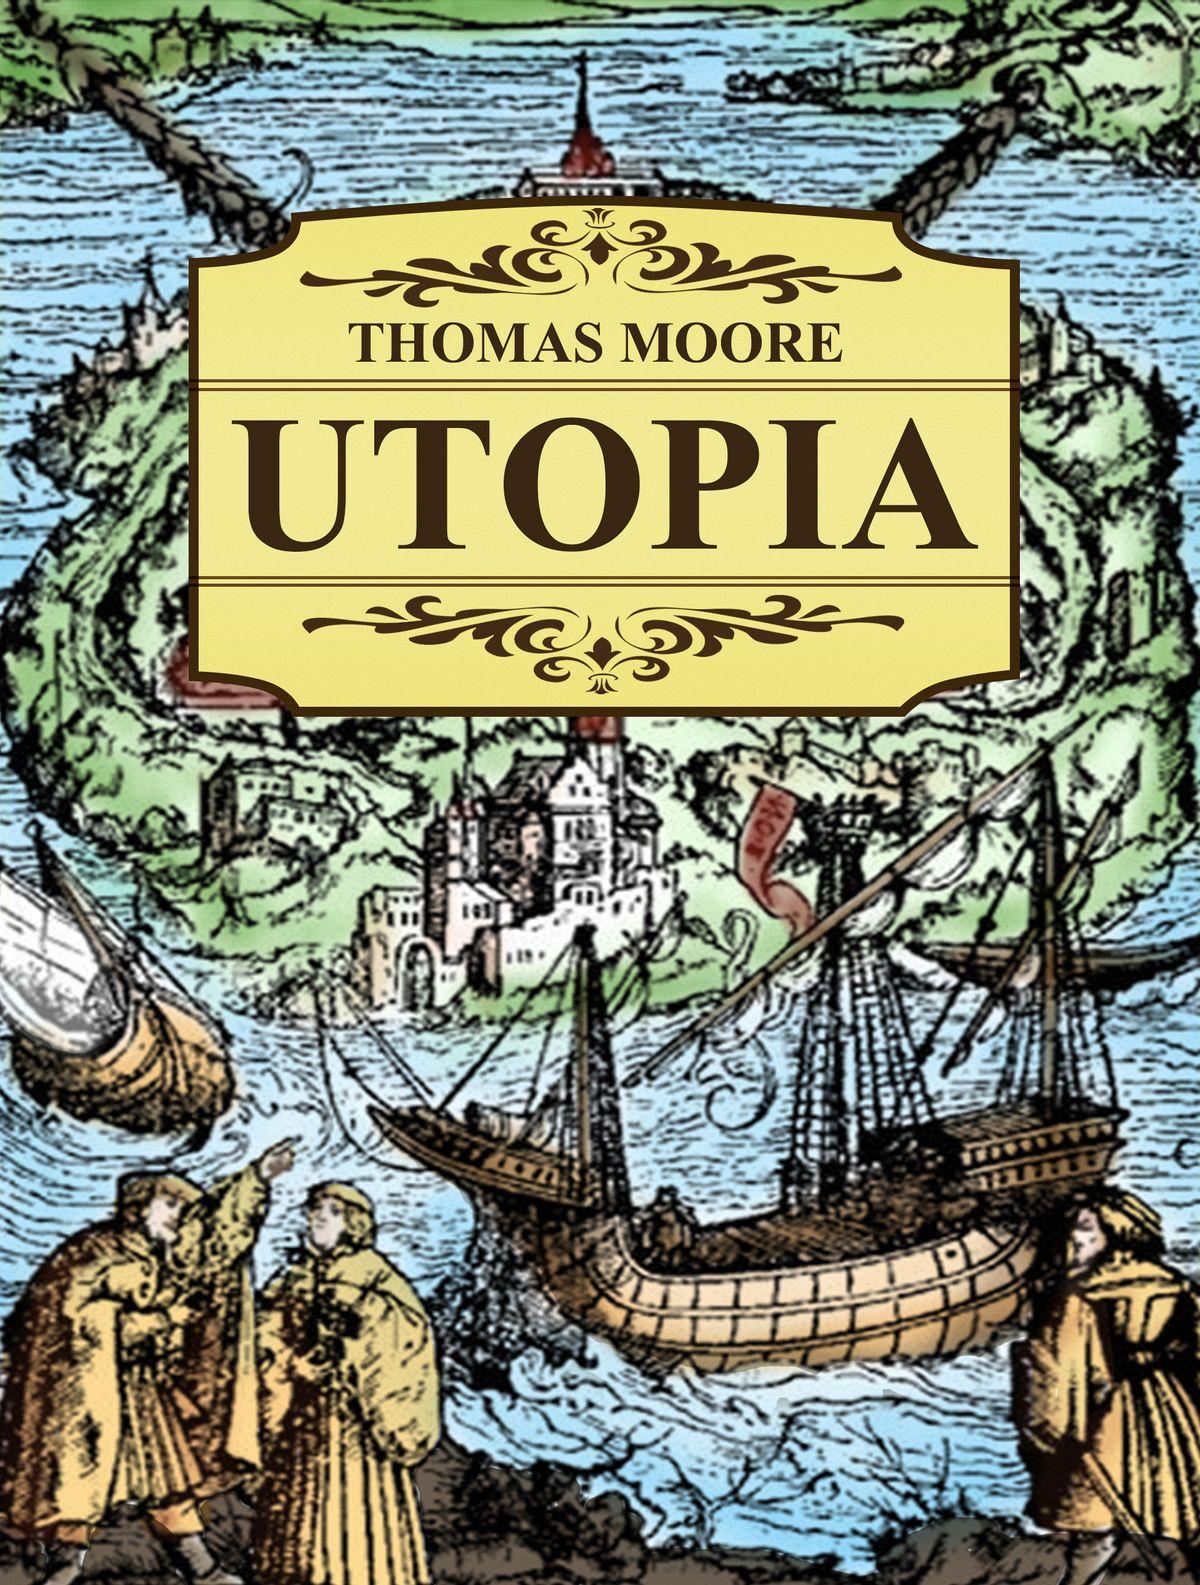 غلاف رواية يوتوبيا لتوماس مور باللغة الانجليزية - روايات عالمية تقع في أقل من 200 صفحة